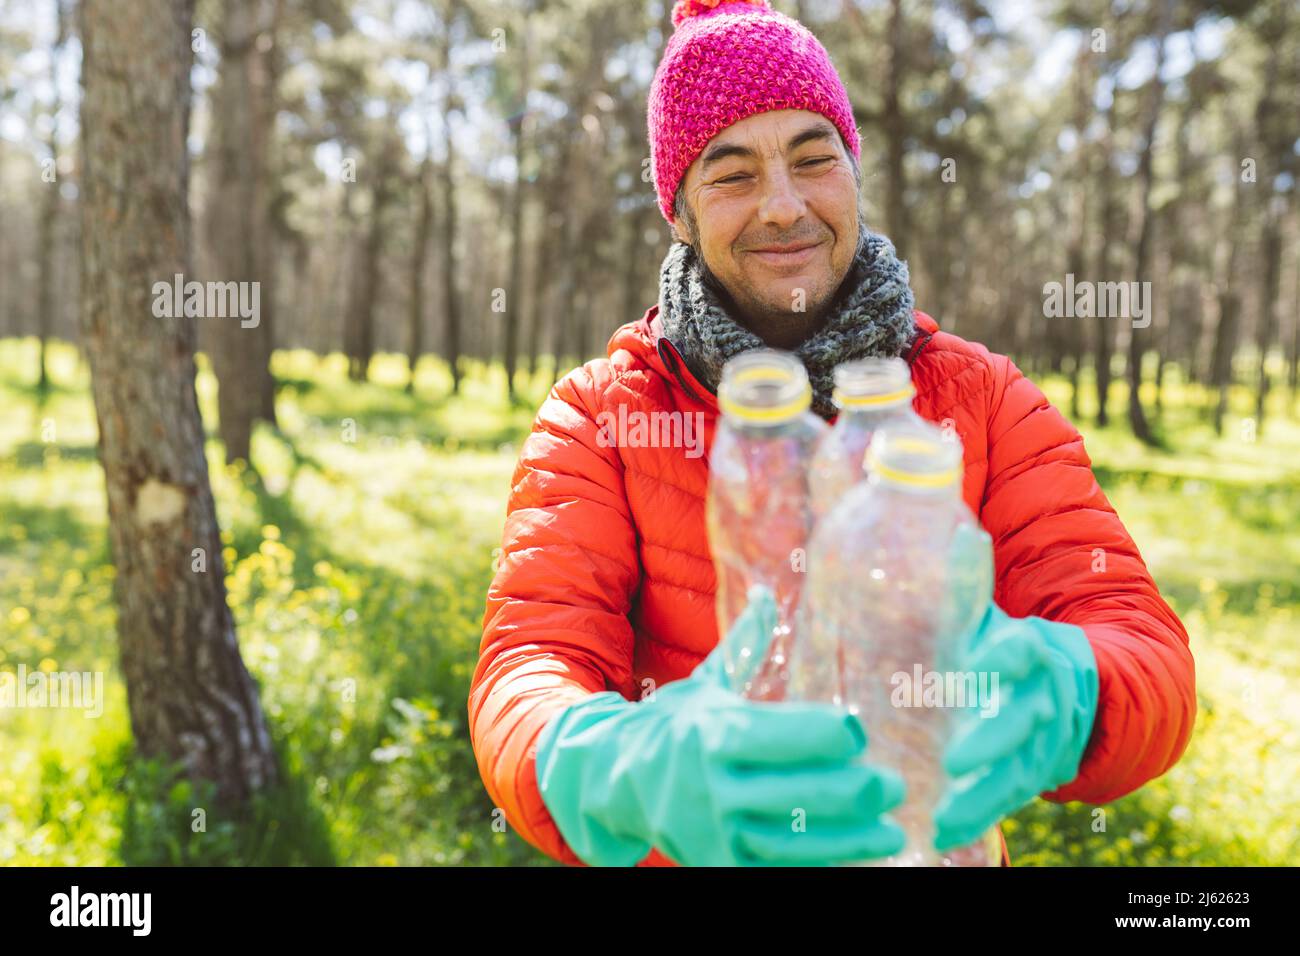 Lächelnder Mann mit Strickmütze, der Plastikflaschen im Wald hält Stockfoto